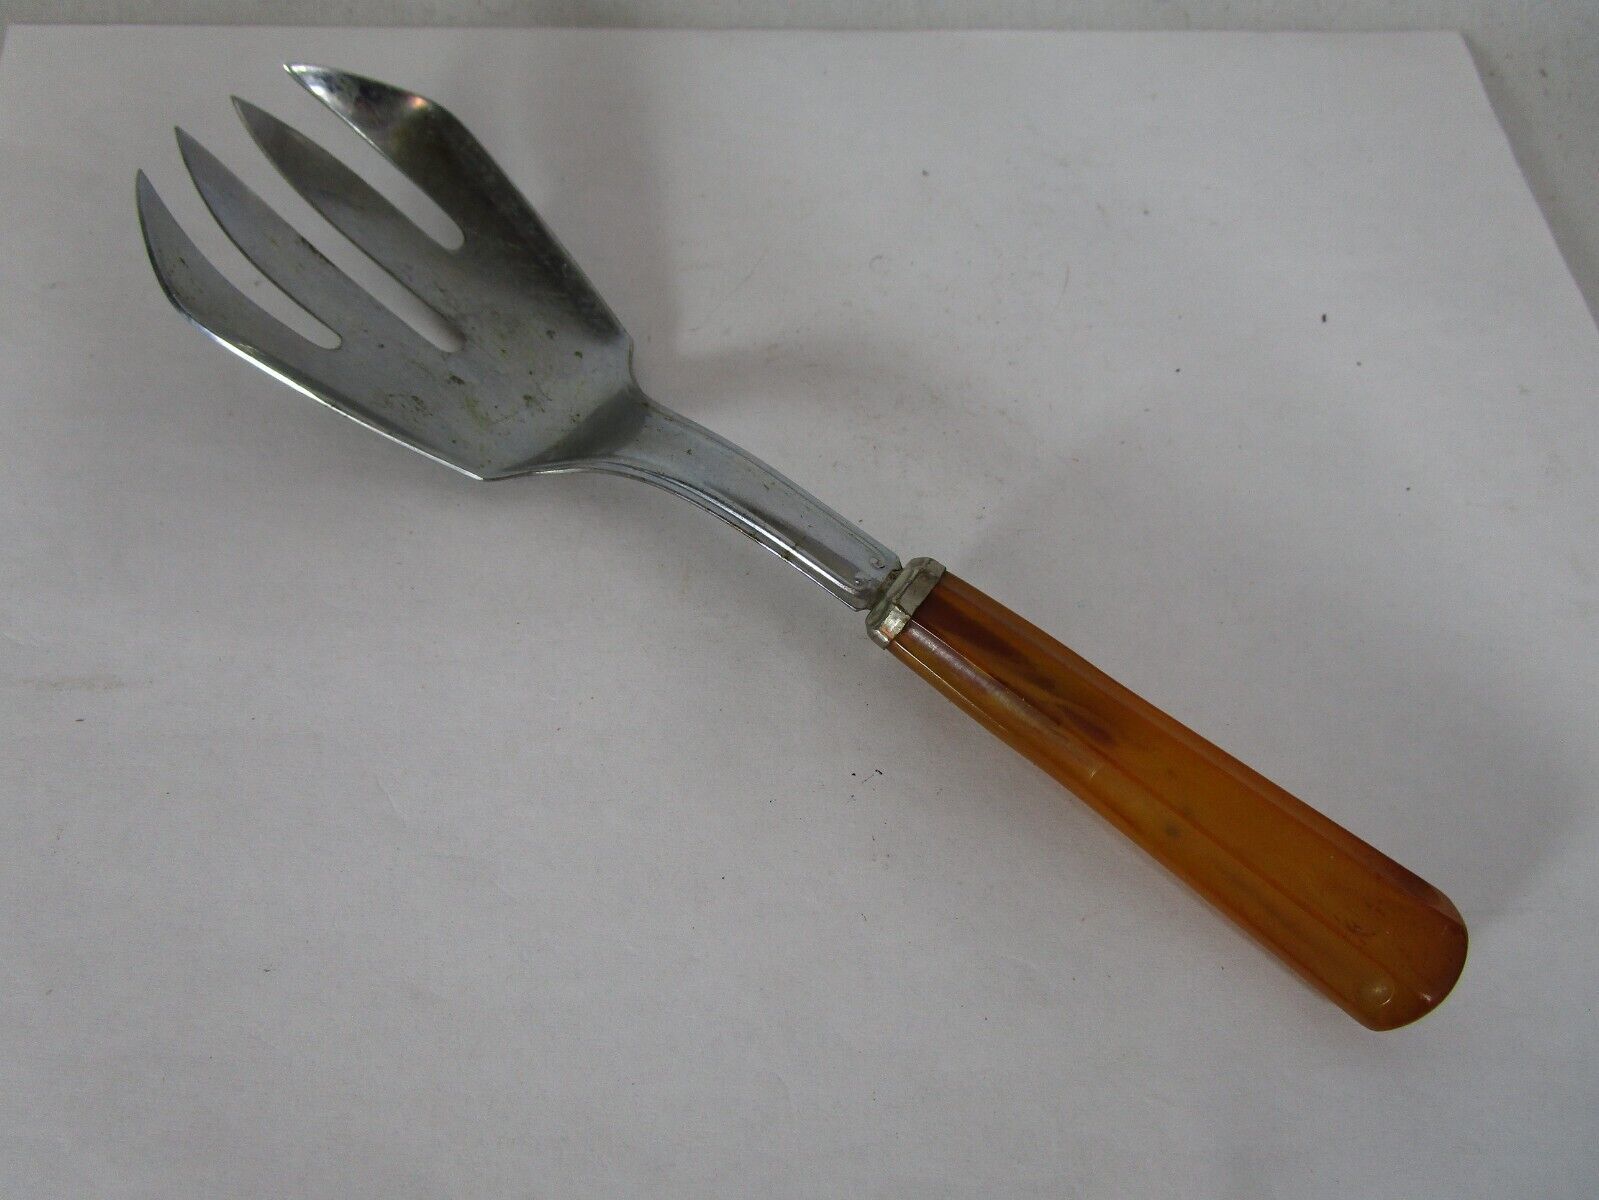 Vintage Salad Serving Fork with Carved Bakelite/Catalin Handle 8.25” Long Rare - $14.84